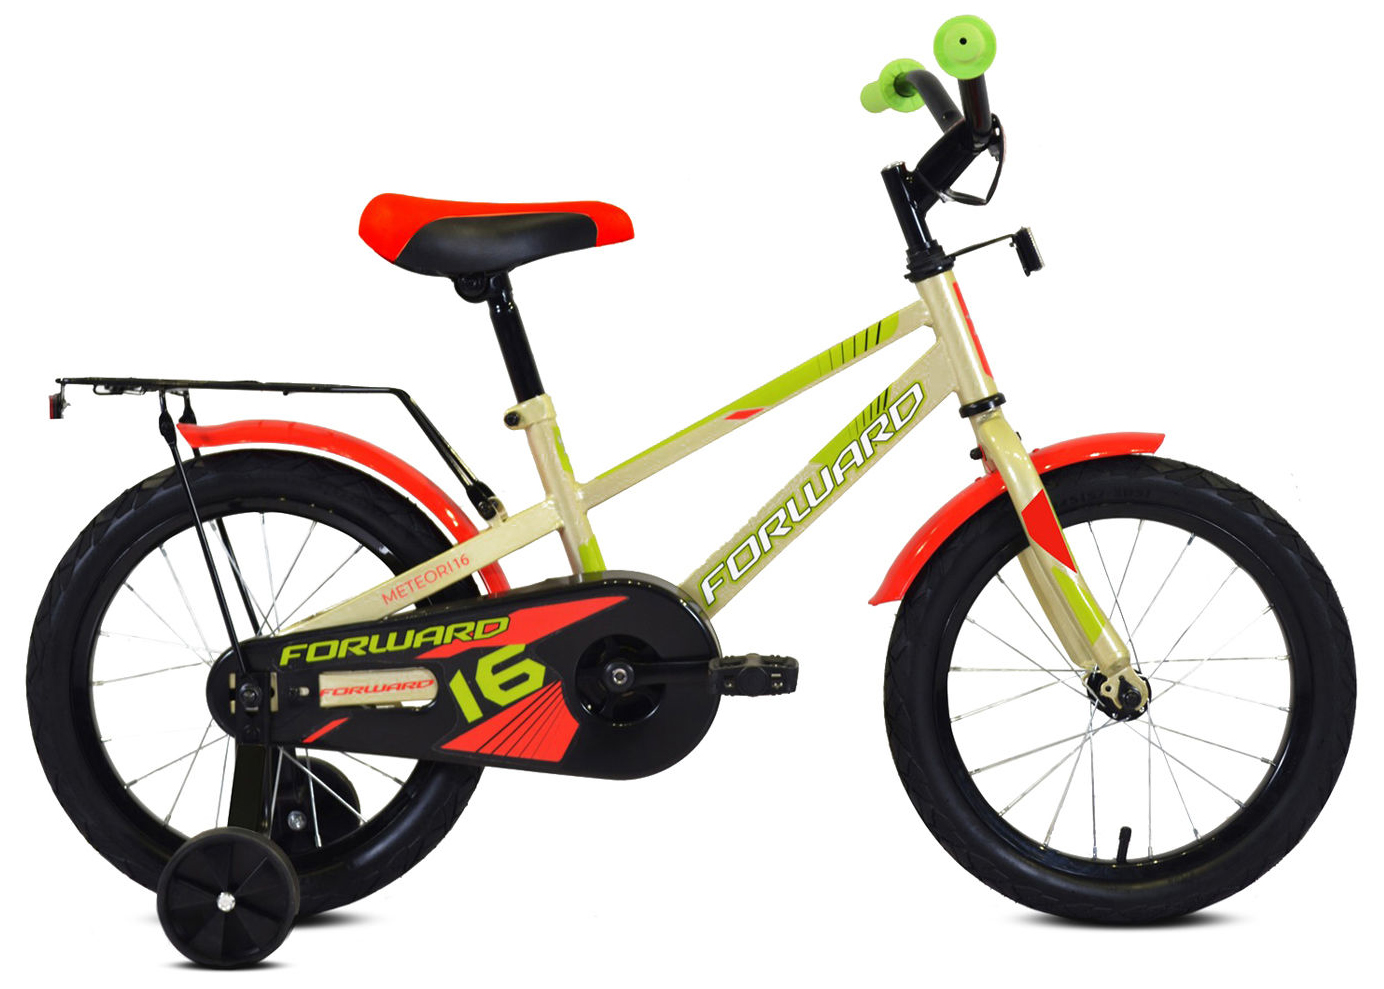  Отзывы о Детском велосипеде Forward Meteor 16 2020